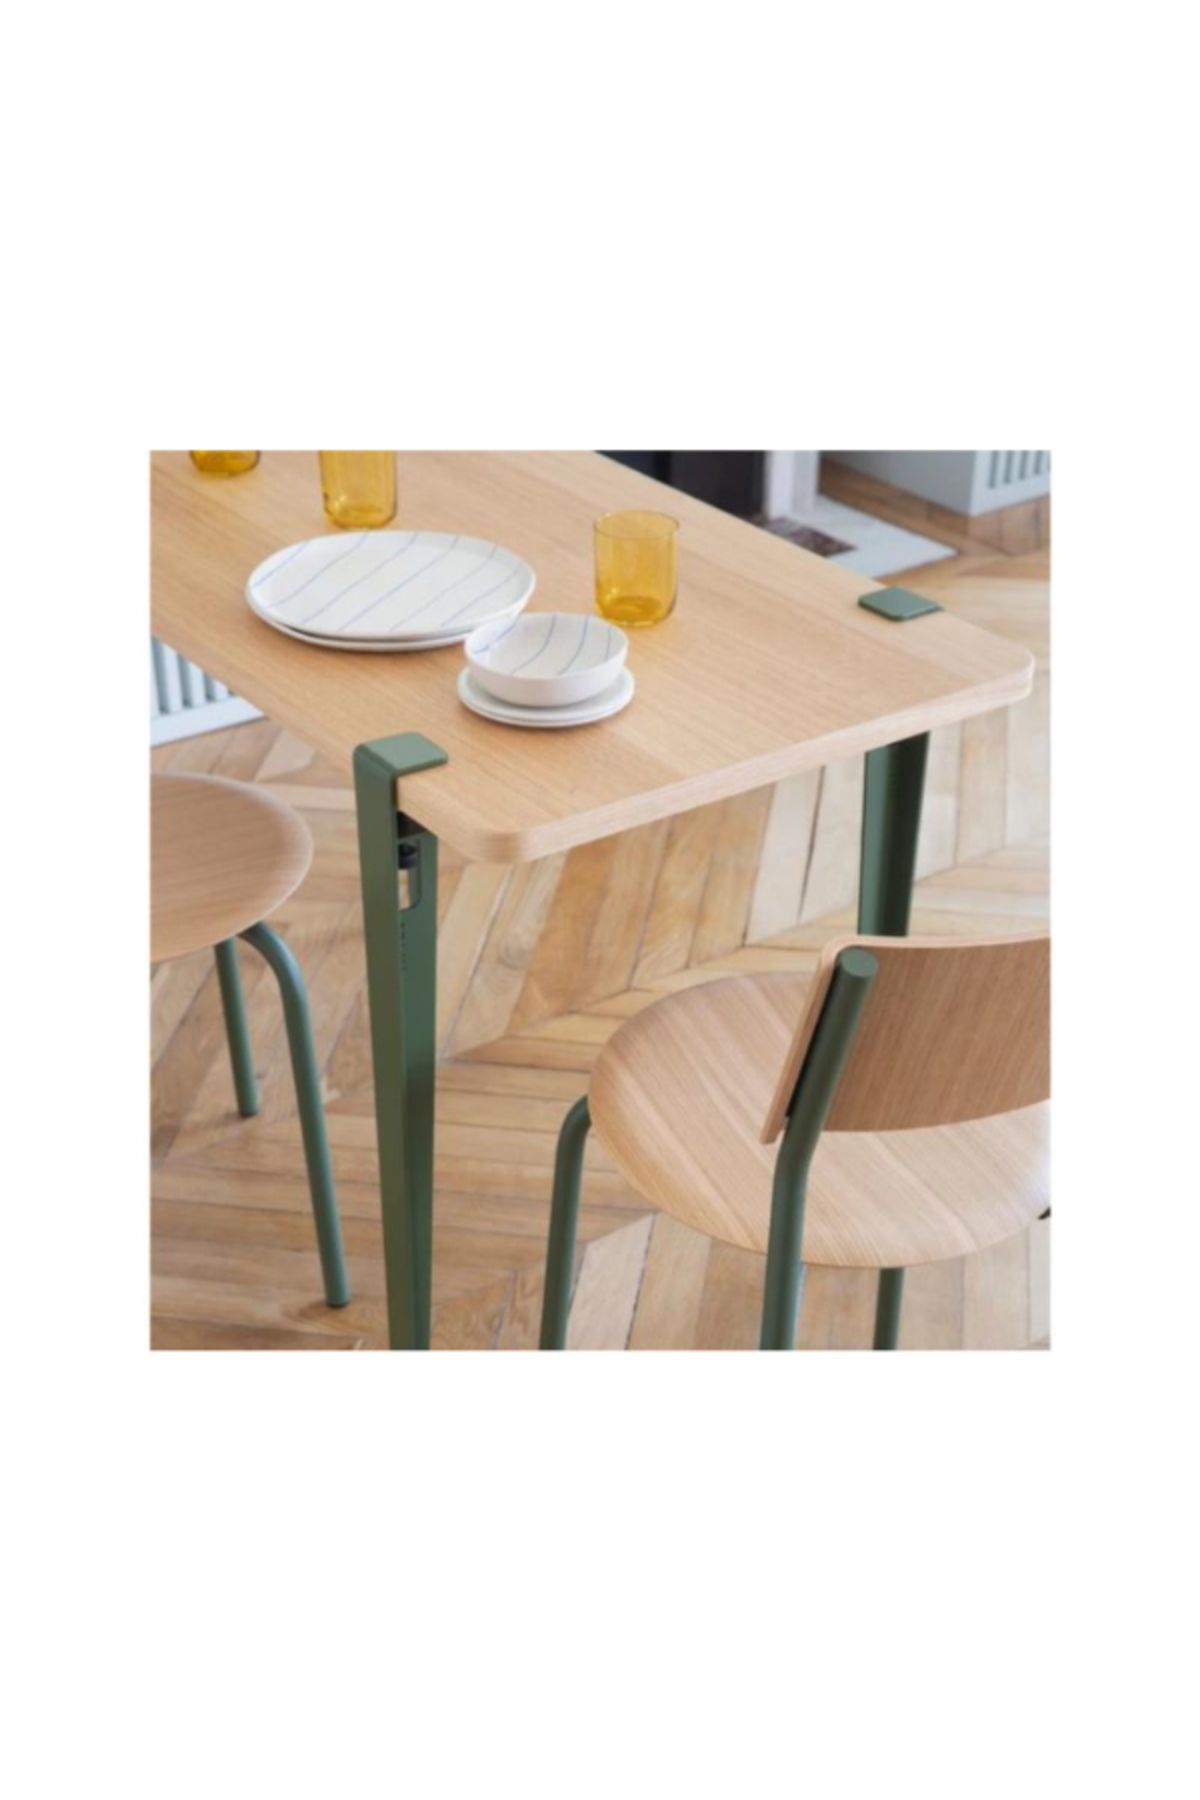 Pristine Design Demonte Minimalist Yemek Masası - Söküp Takılabilir Portatif Metal Ayaklı Yemek Masası